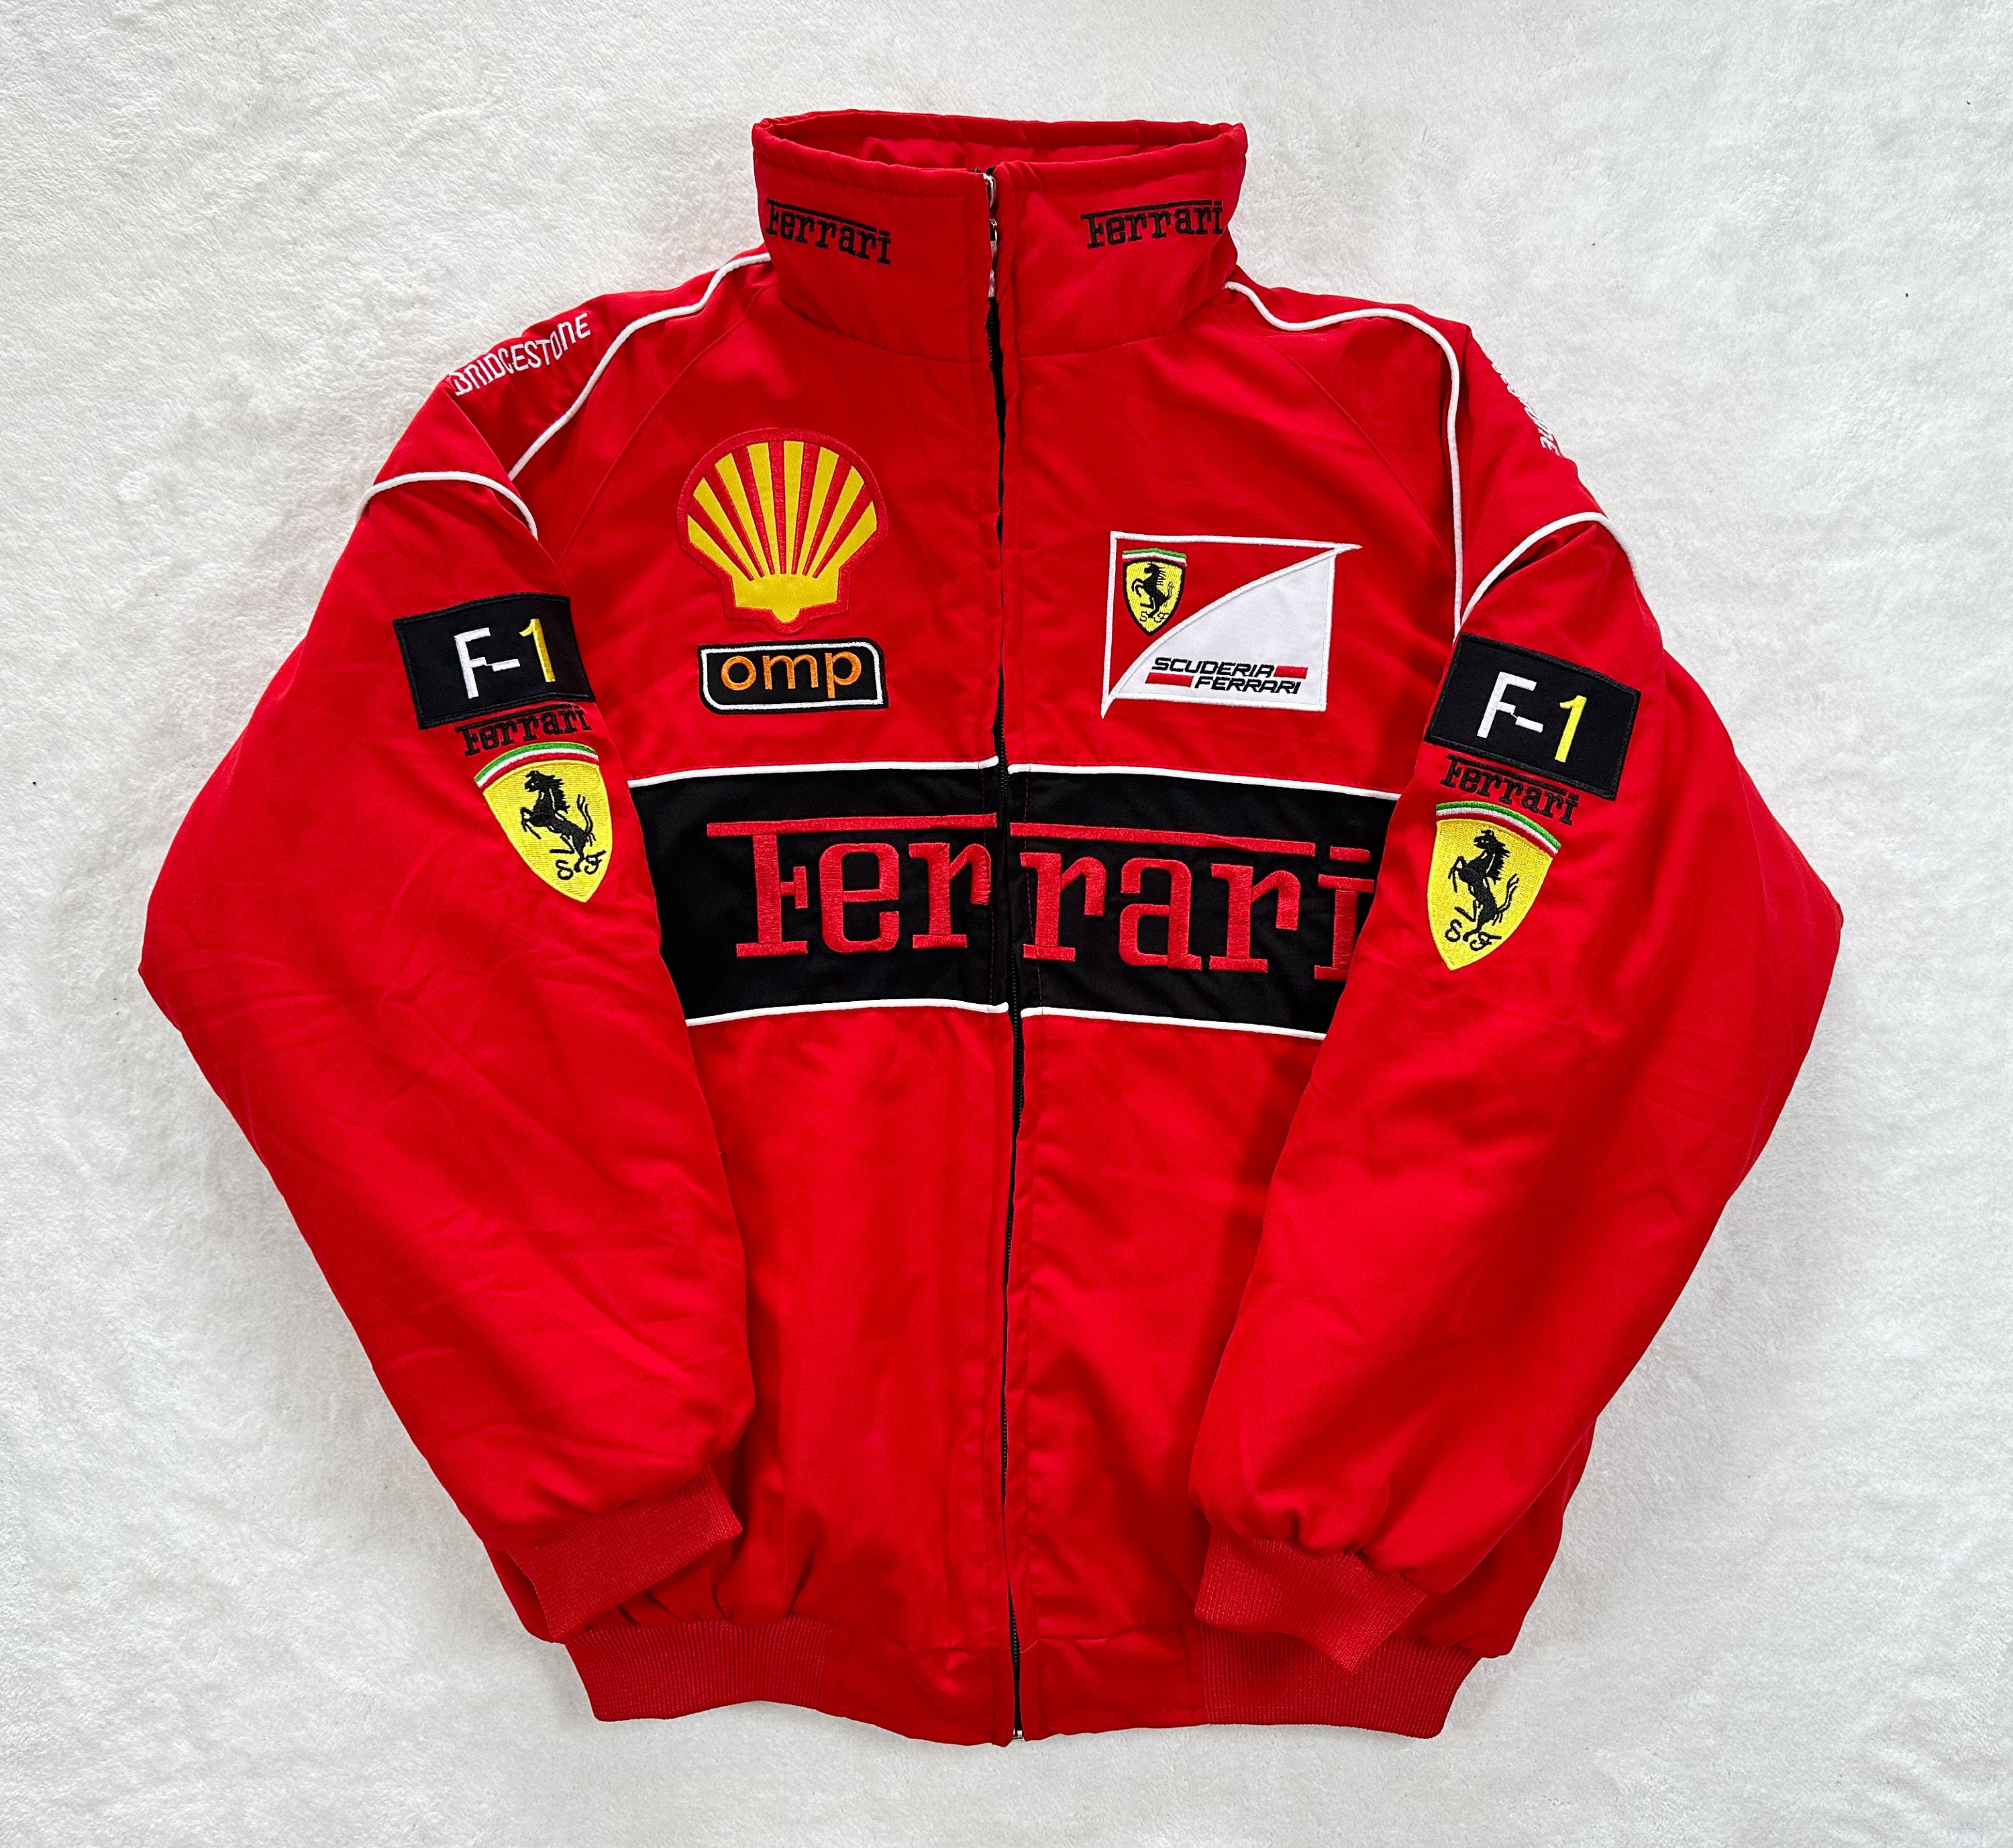 Ferrari Jacket Vintage Ferrari Racing Jacket F1 Jacket Bomber - Etsy